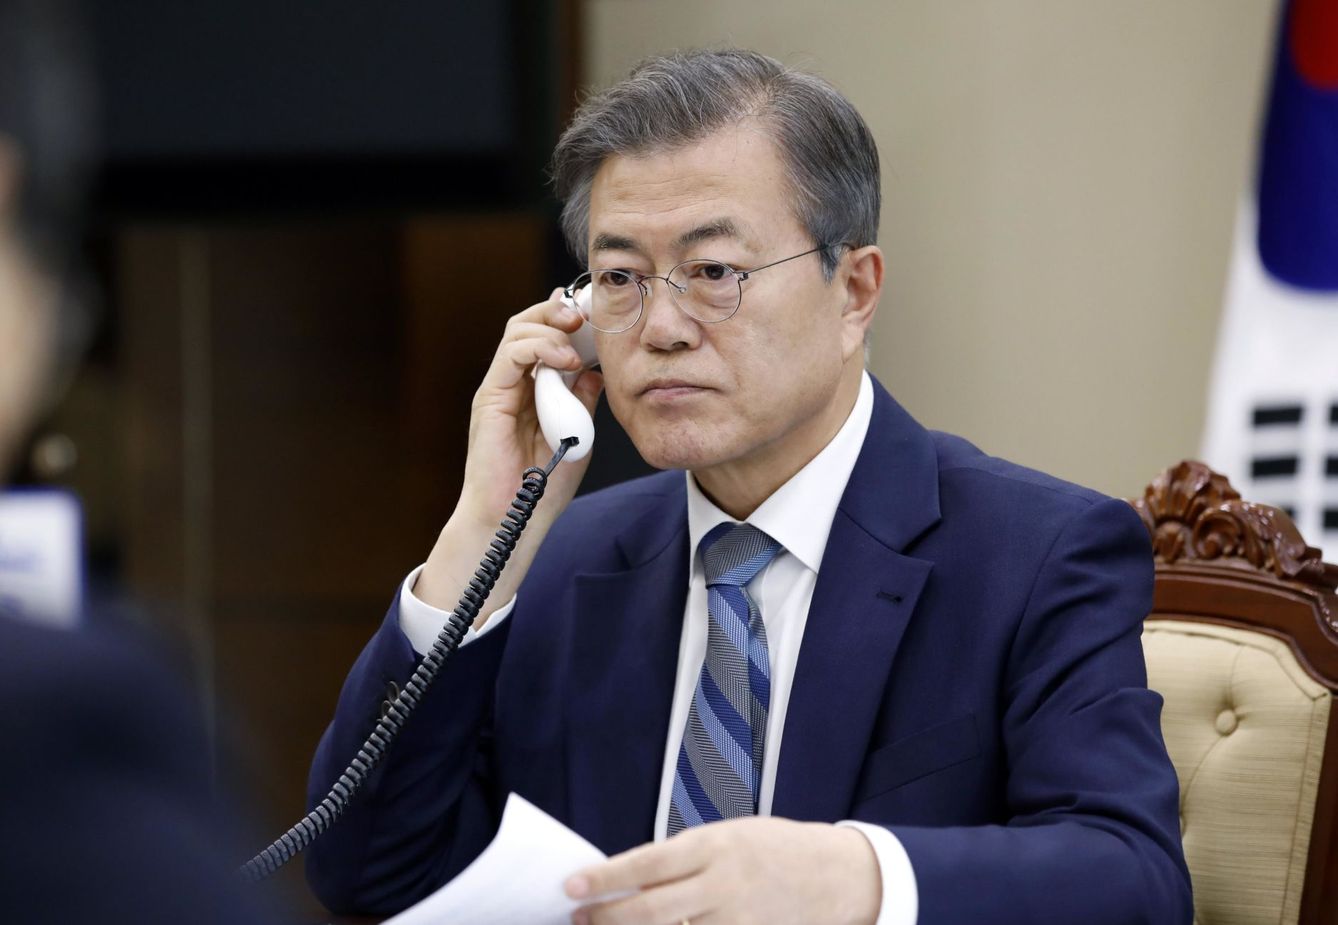 Fotografía cedida por la Oficina Presidencial de Corea del Sur que muestra al presidente surcoreano, Moon Jae-in. (EFE)